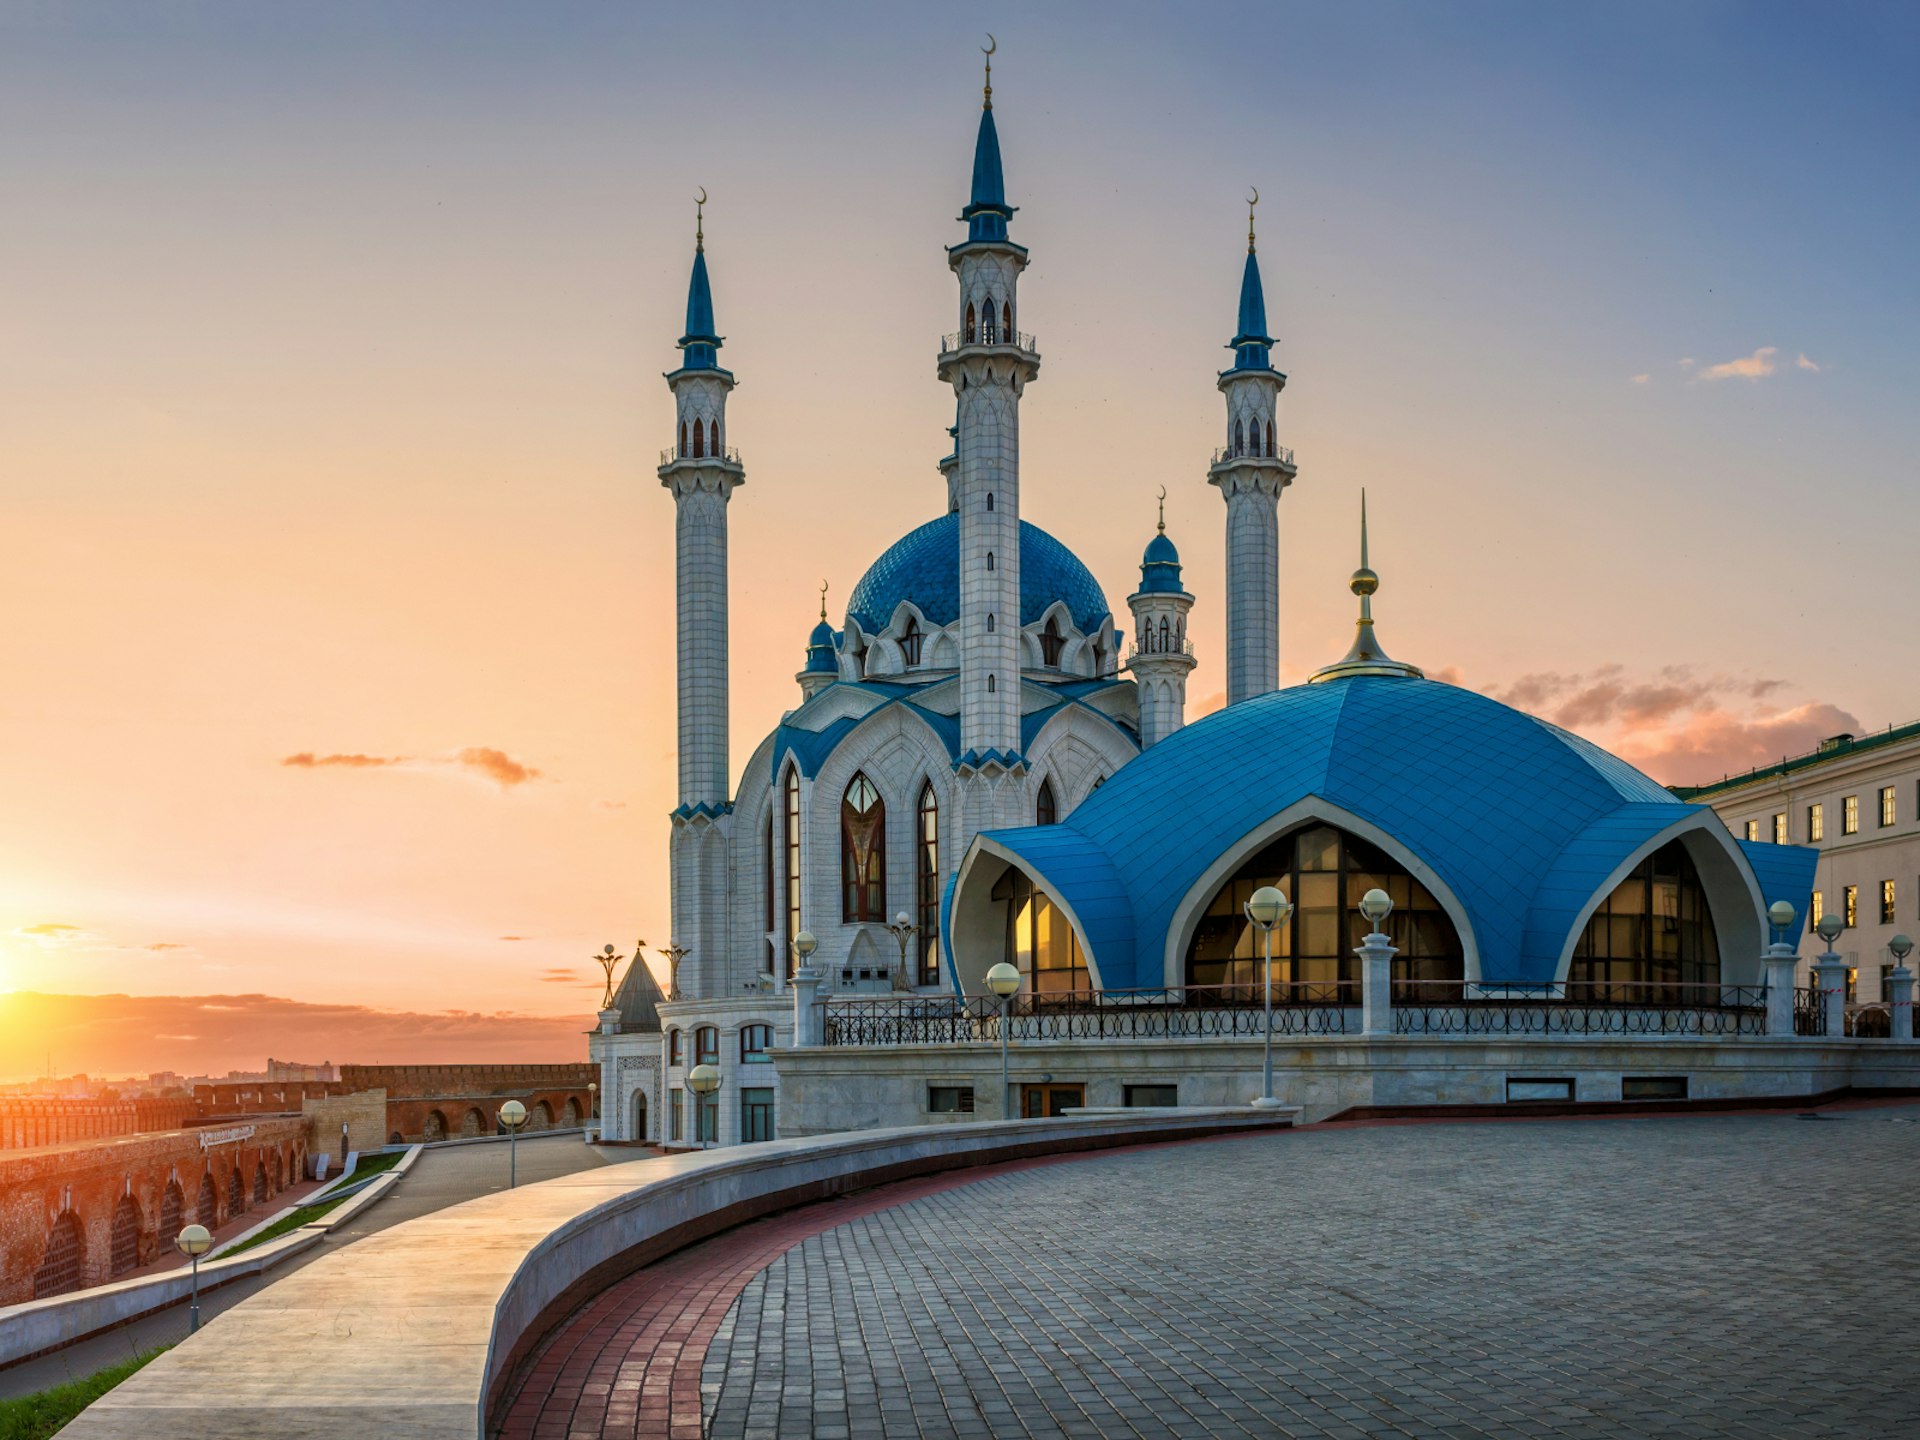 Summer sunset over the Kul Sharif Mosque in Kazan © Yuliya Baturina / Shutterstock